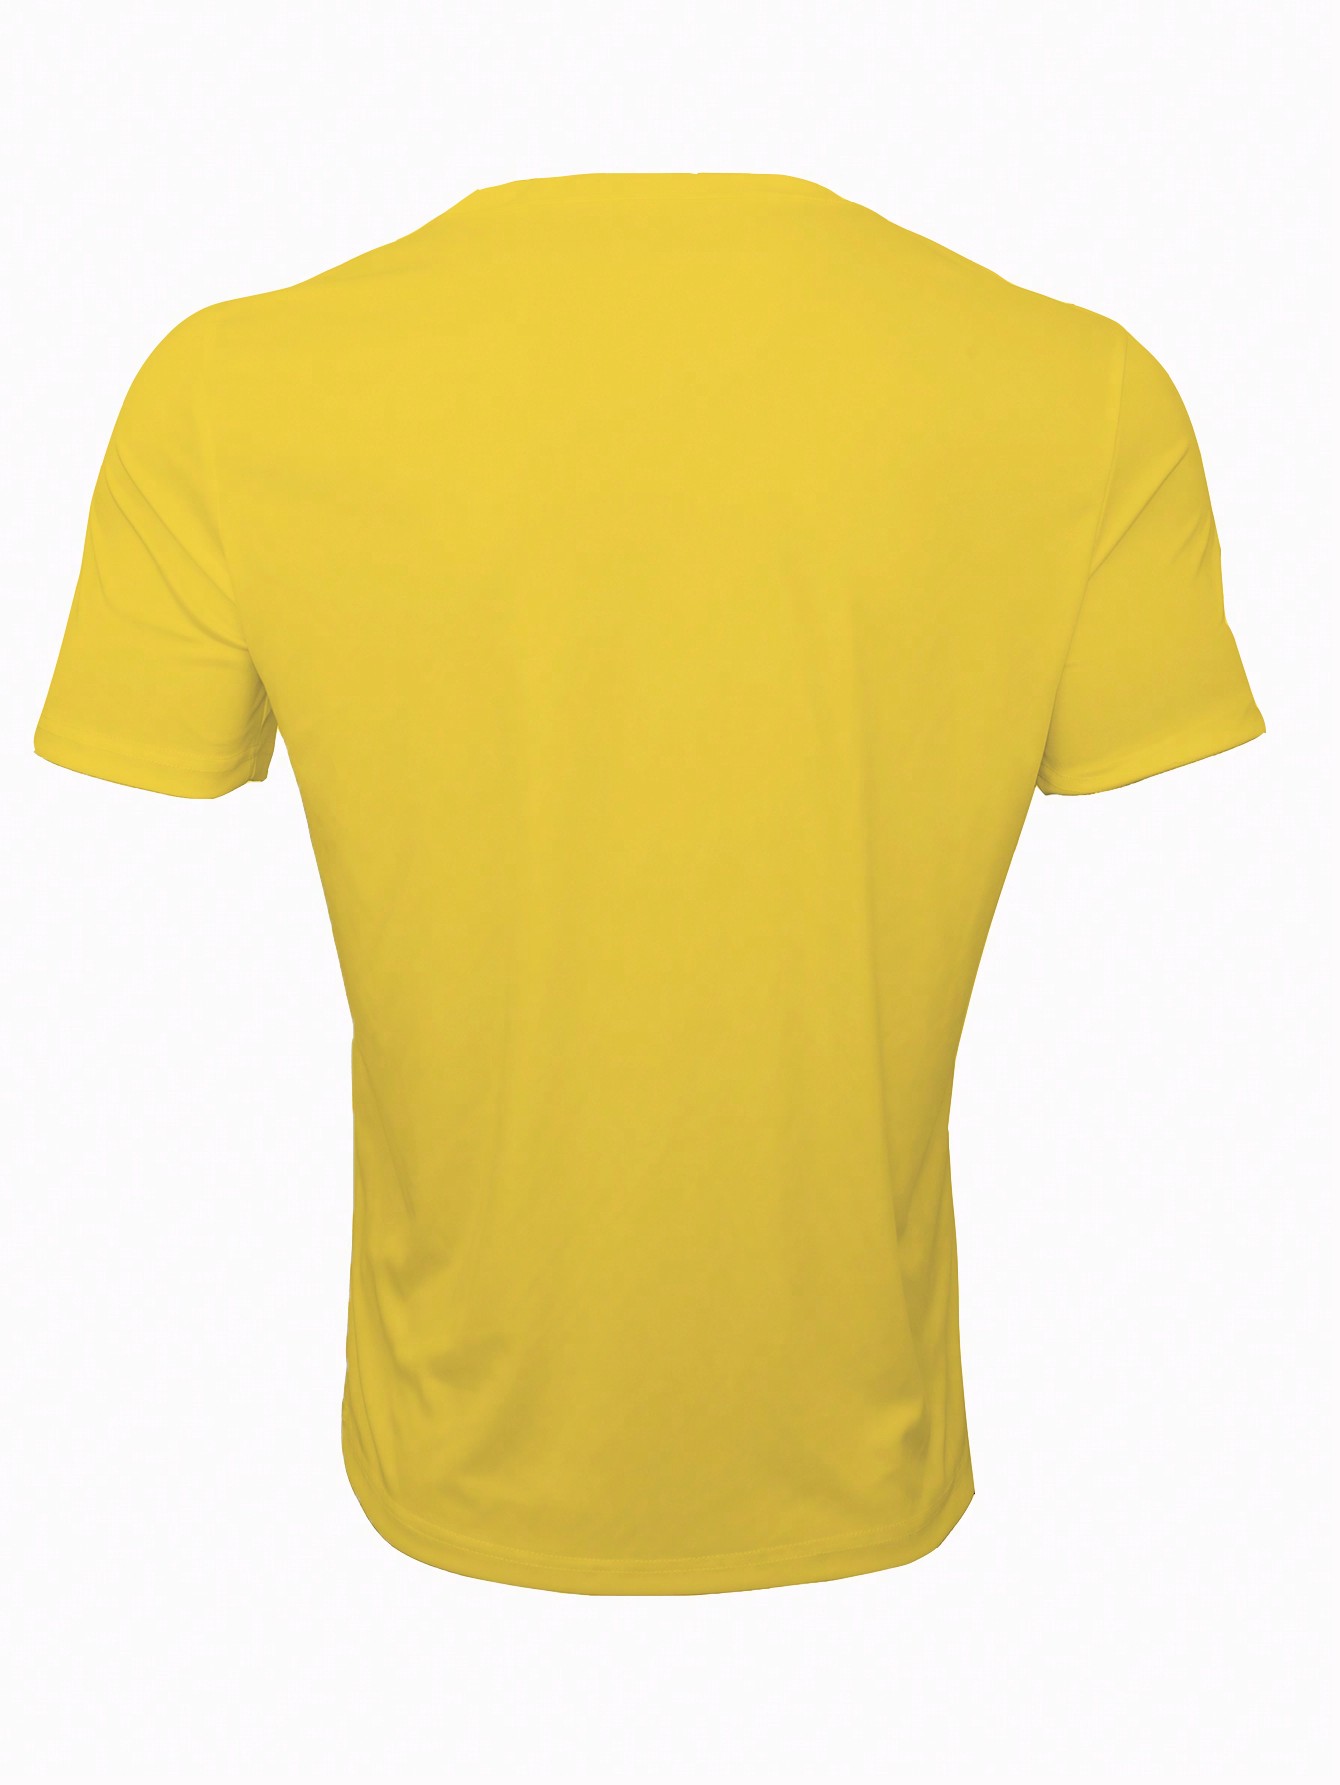 Мужская повседневная футболка с коротким рукавом и принтом Луны, желтый футболка мужская с забавным принтом крутая тенниска с коротким рукавом в стиле унисекс повседневная майка для улицы юютсу кайсен юцзи ита